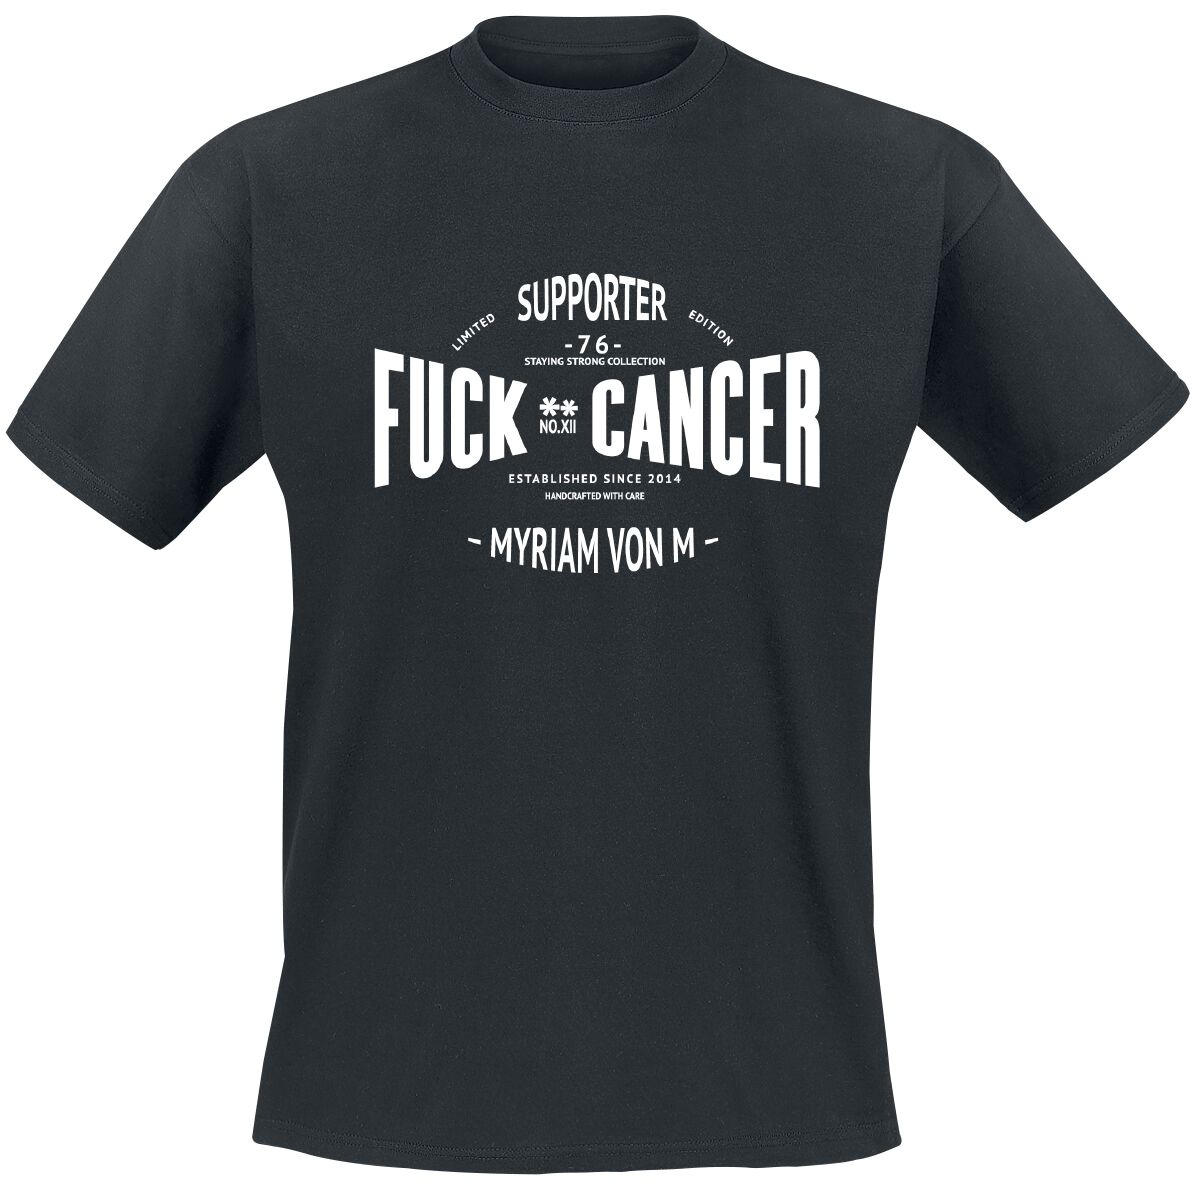 Fuck Cancer by Myriam von M Supporter T-Shirt black